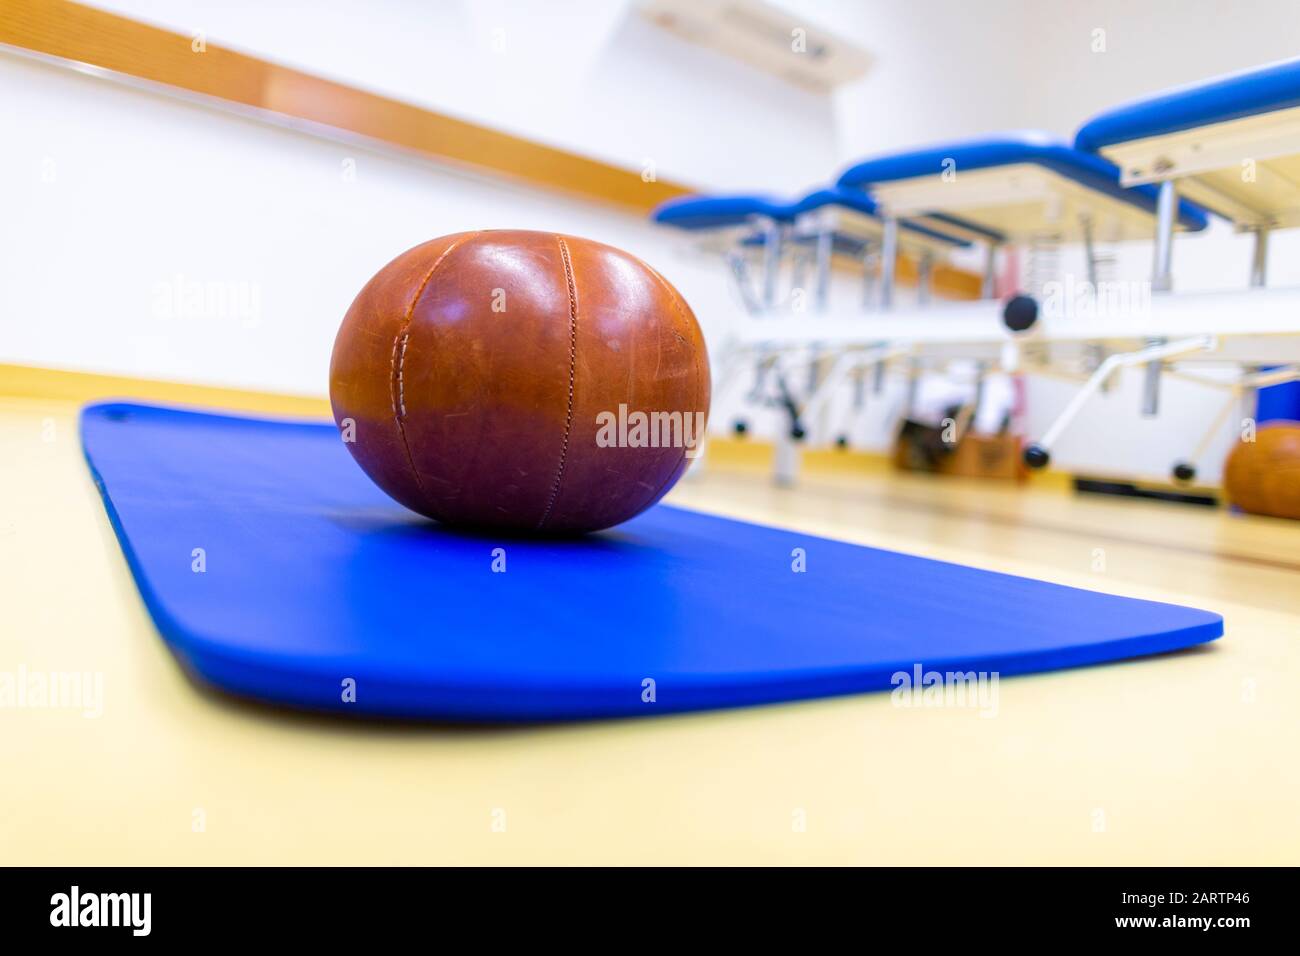 Le ballon de gym se trouve sur un tapis de sport bleu Banque D'Images